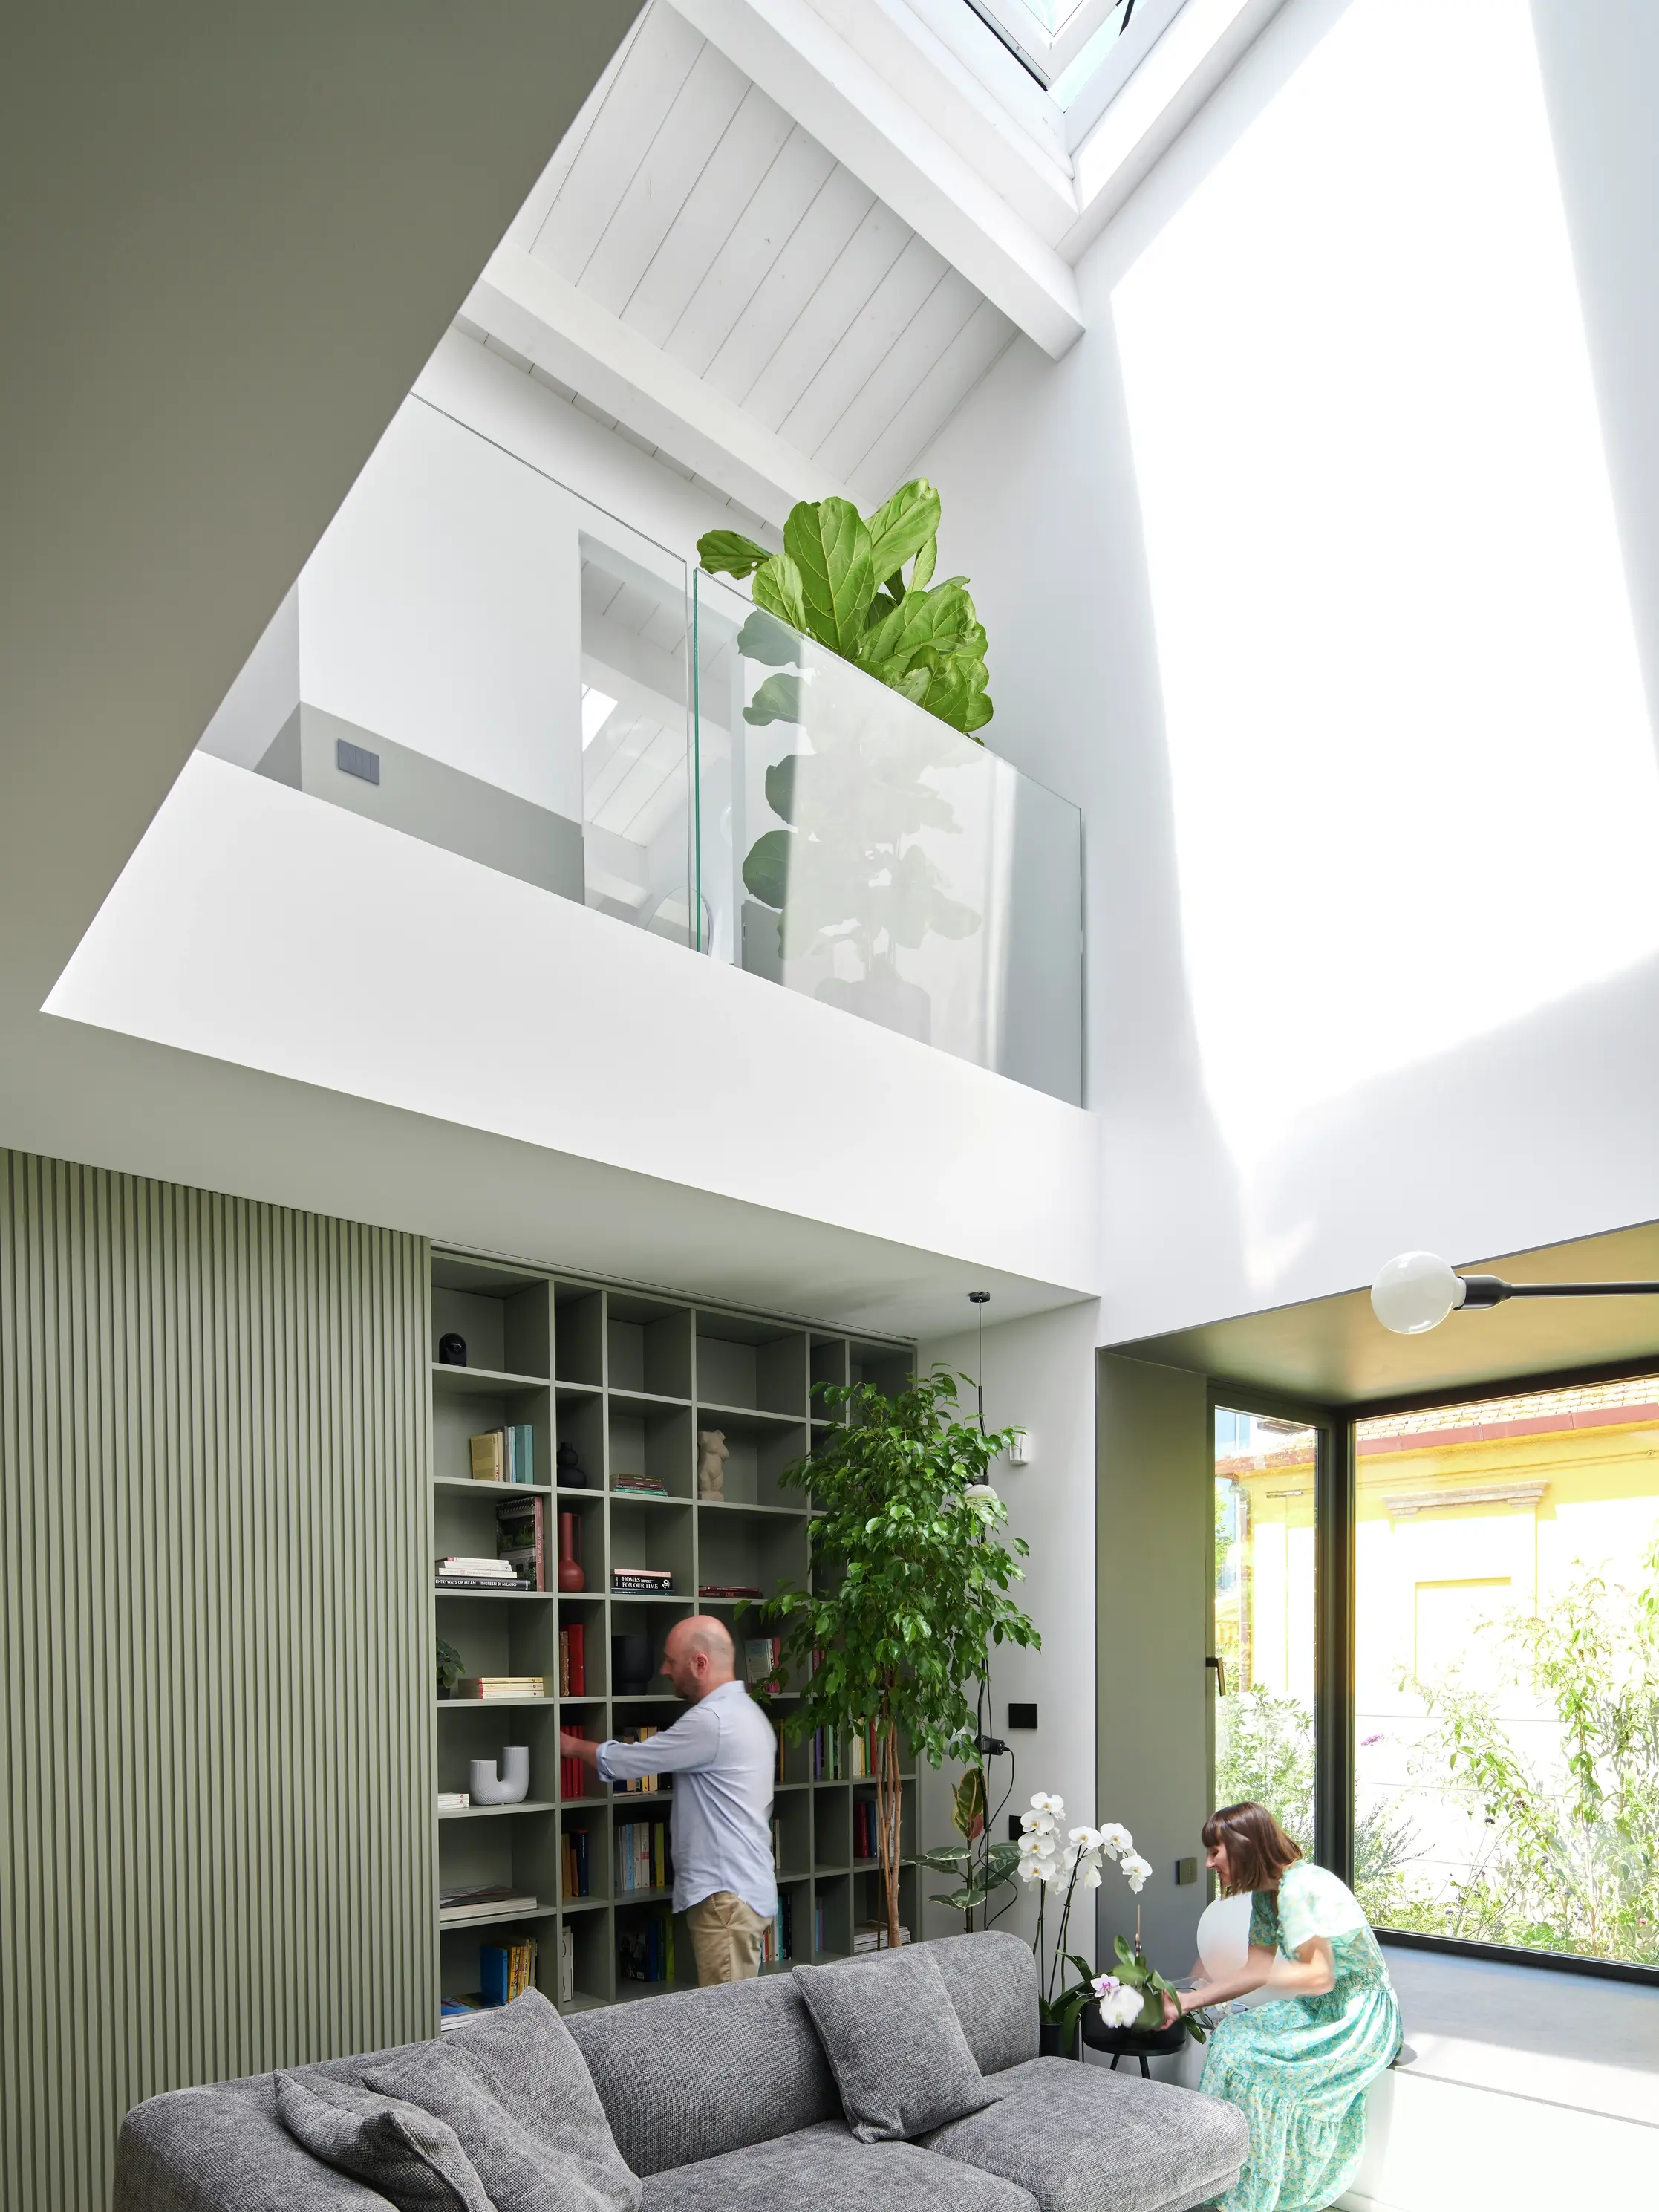 Soggiorno moderno con luce naturale proveniente da una finestra per tetti VELUX, divano grigio e zona pranzo.